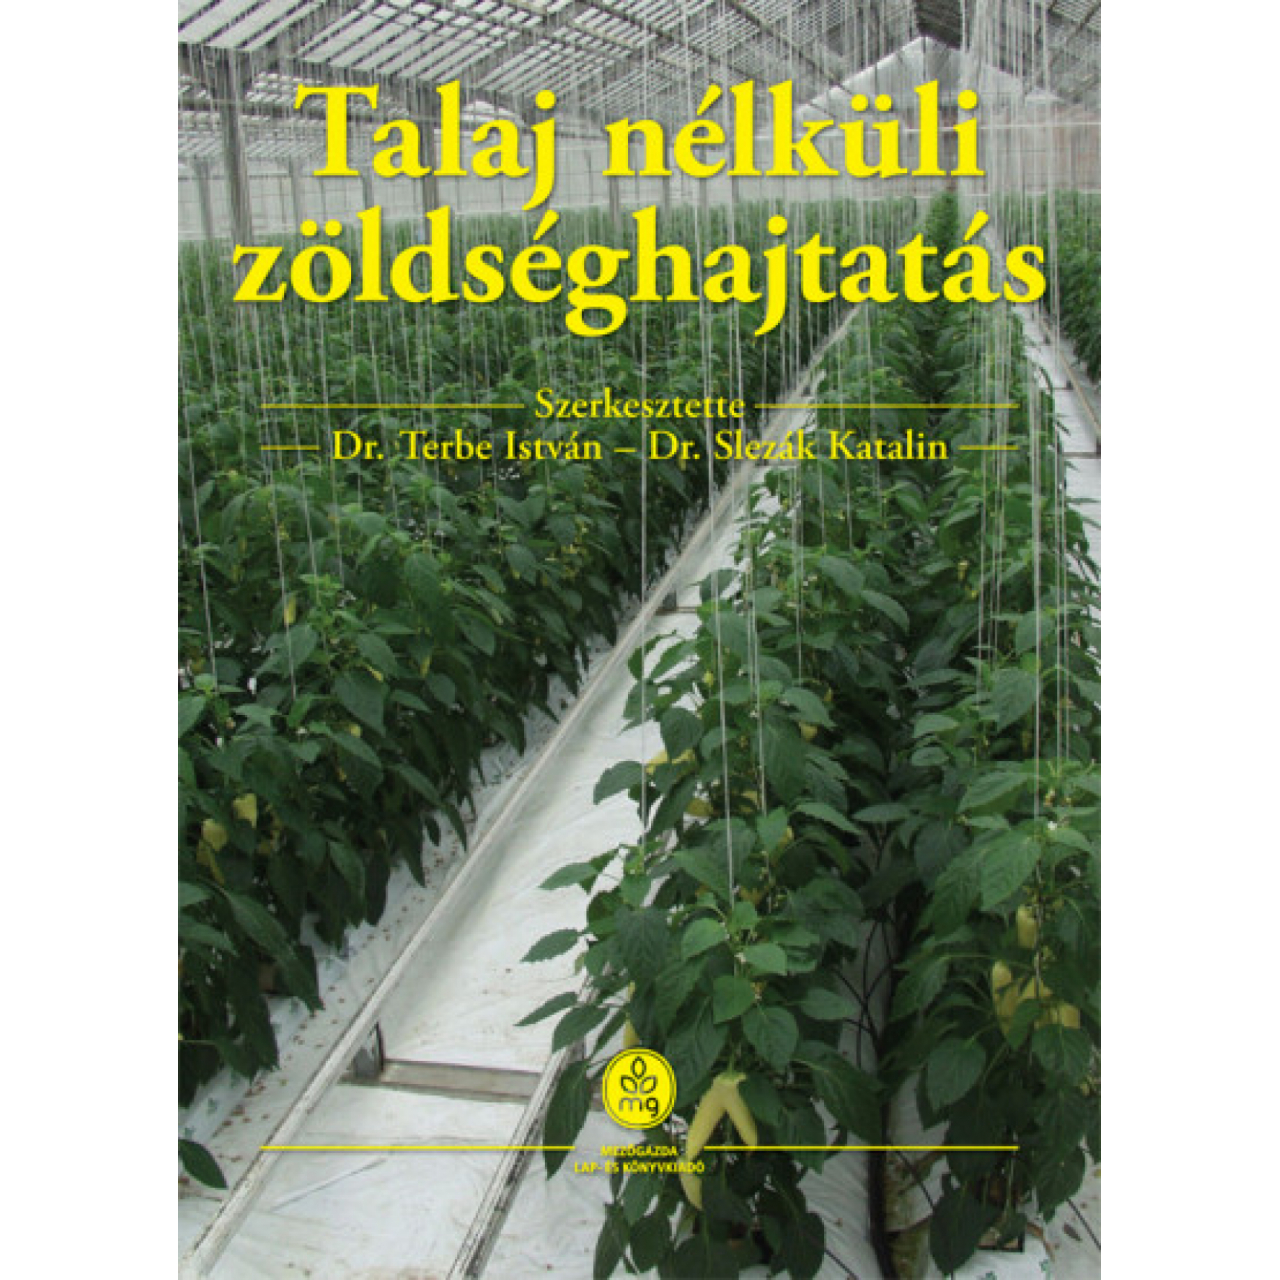 Dr. Terbe István - Dr. Slezák Katalin: Talaj nélküli zöldséghajtás